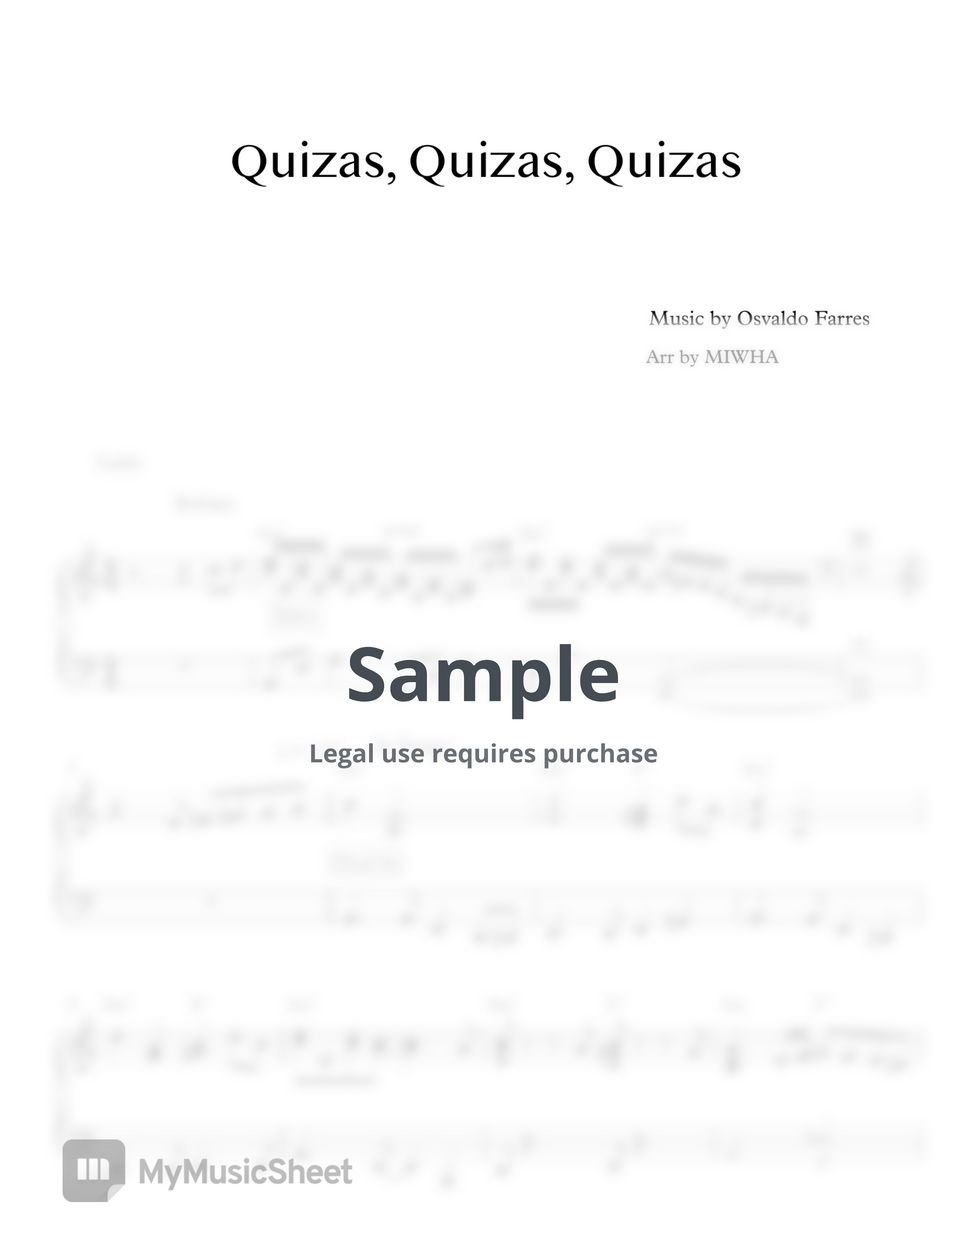 Osvaldo Farres - Quizas, Quizas, Quizas (Latin Jazz) by MIWHA